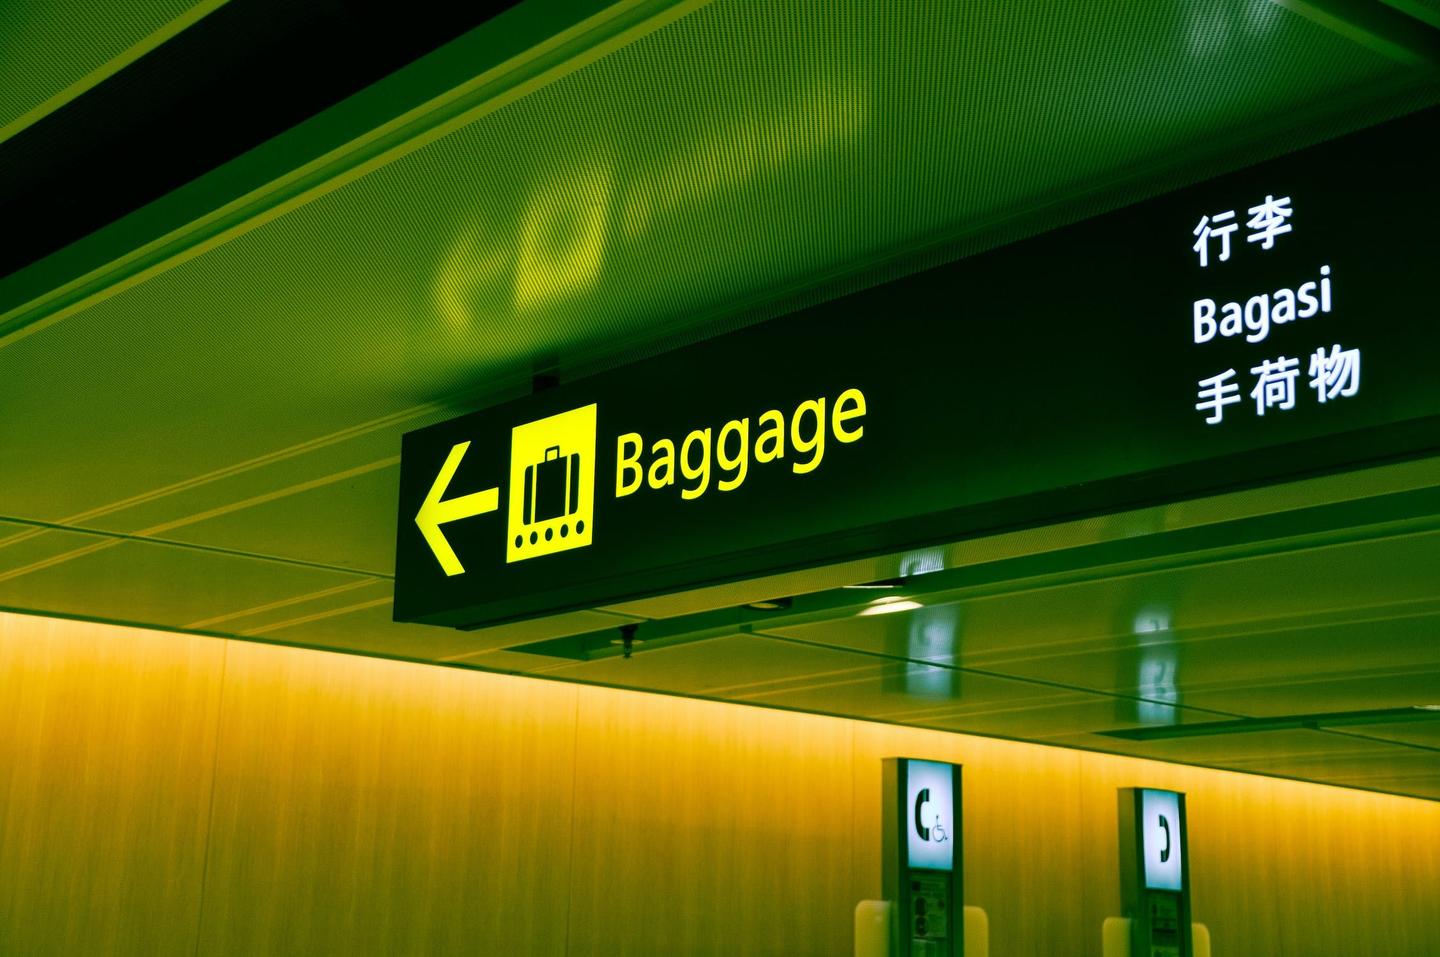 澳门更新了最新的入境政策-飞客行政酒廊-飞客网